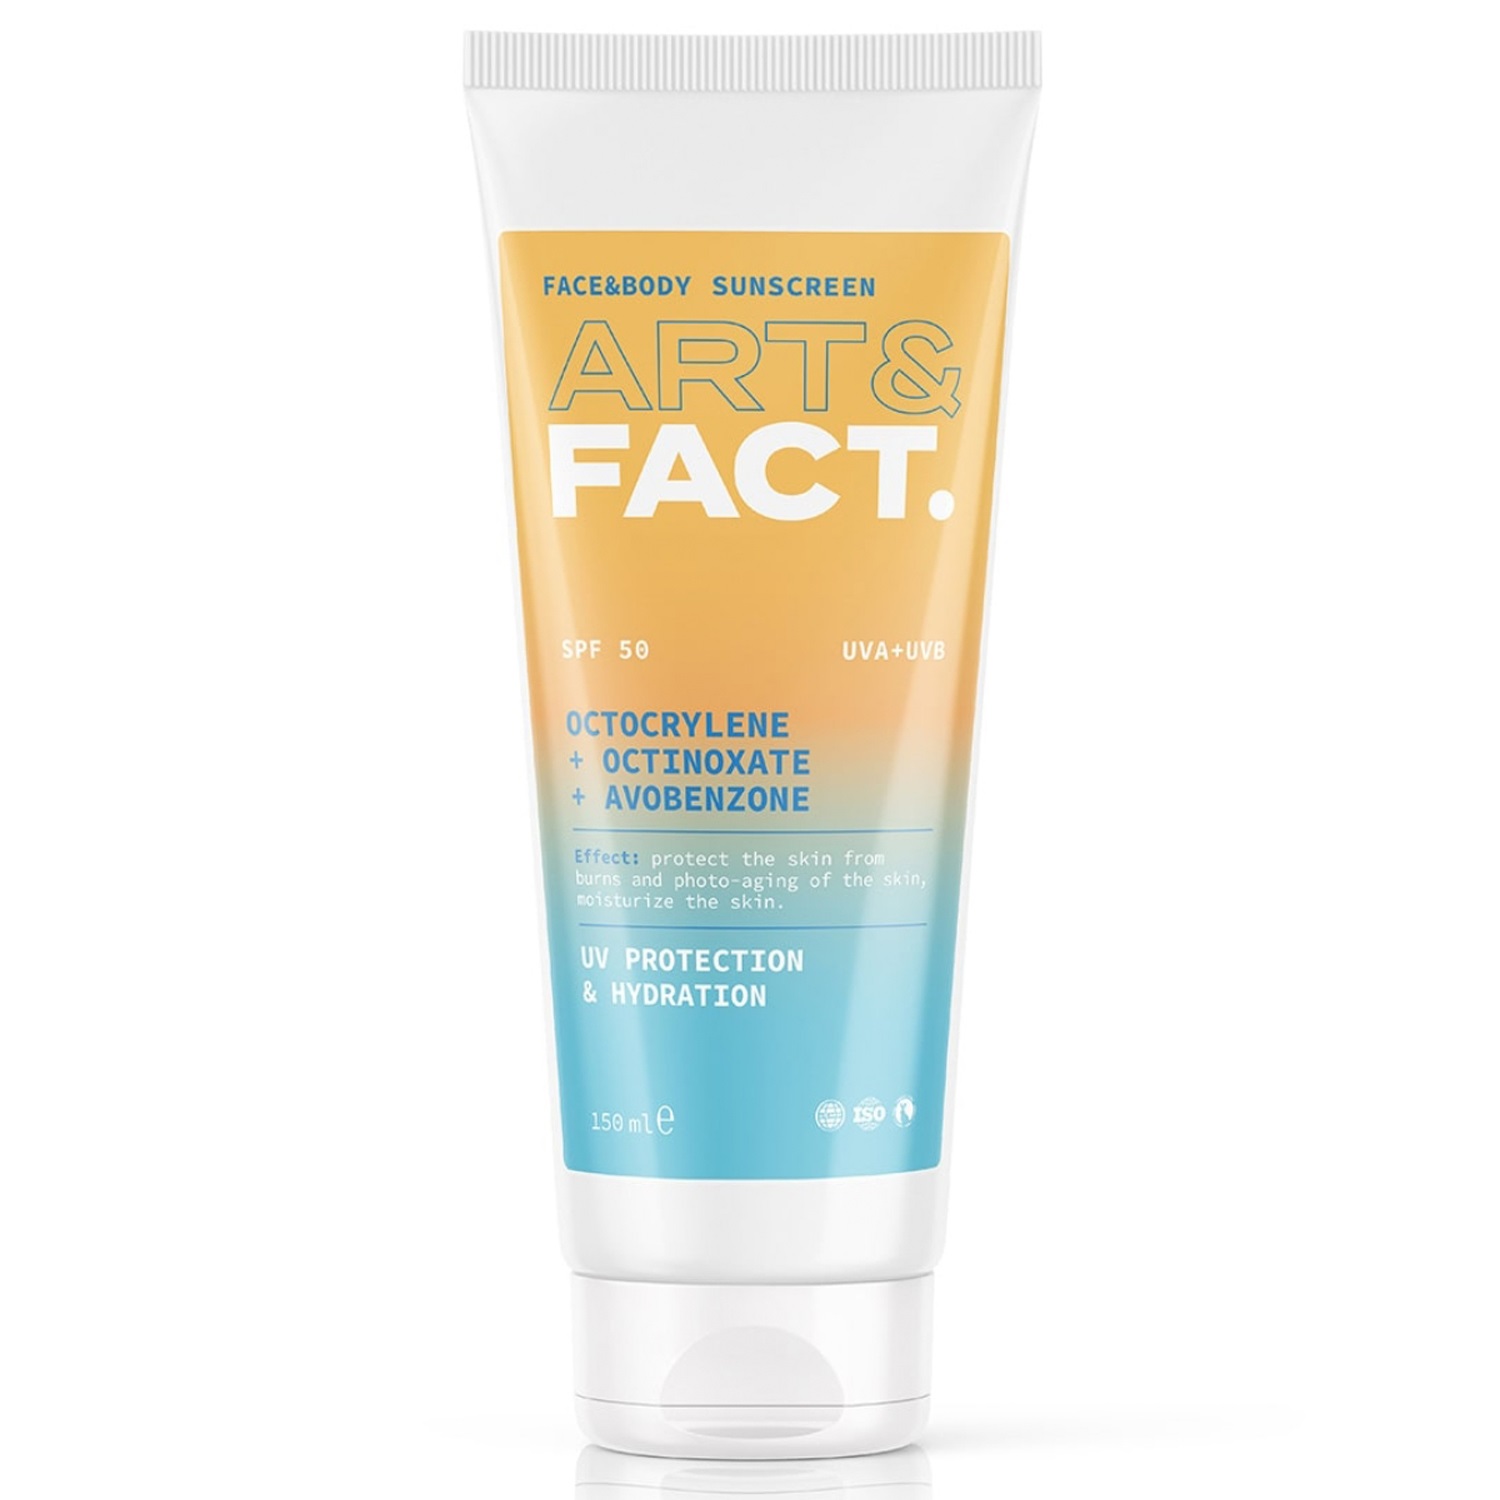 Art&Fact Ежедневный солнцезащитный крем SPF 50 с химическими фильтрами Octocrylene + Octinoxate + Avobenzone. Face&body sunscreen для всех типов кожи лица и тела, 150 мл (Art&Fact, Защита от солнца)